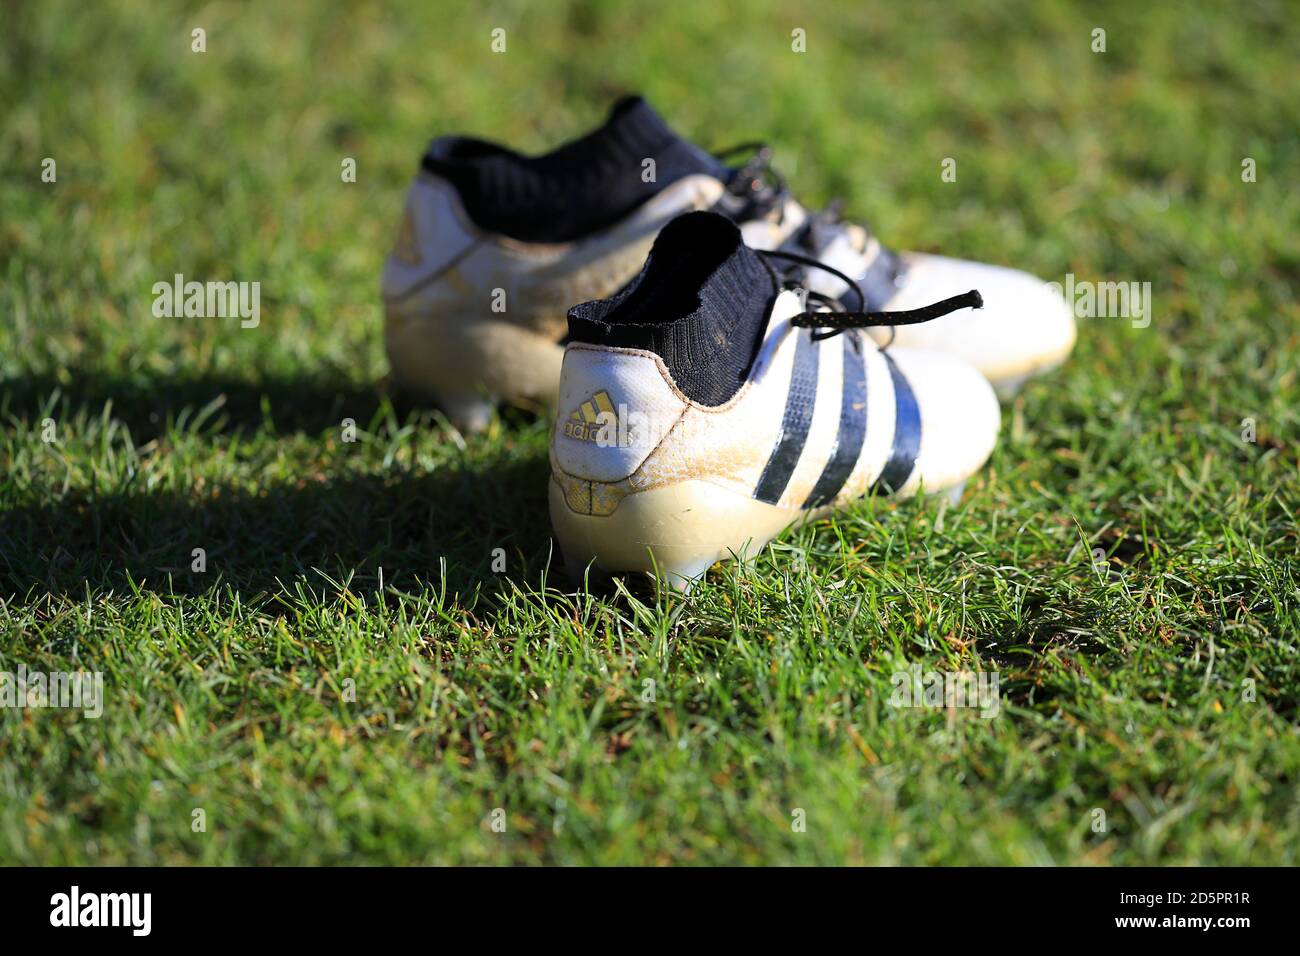 Une paire de chaussures de football Adidas sur le terrain Photo Stock -  Alamy